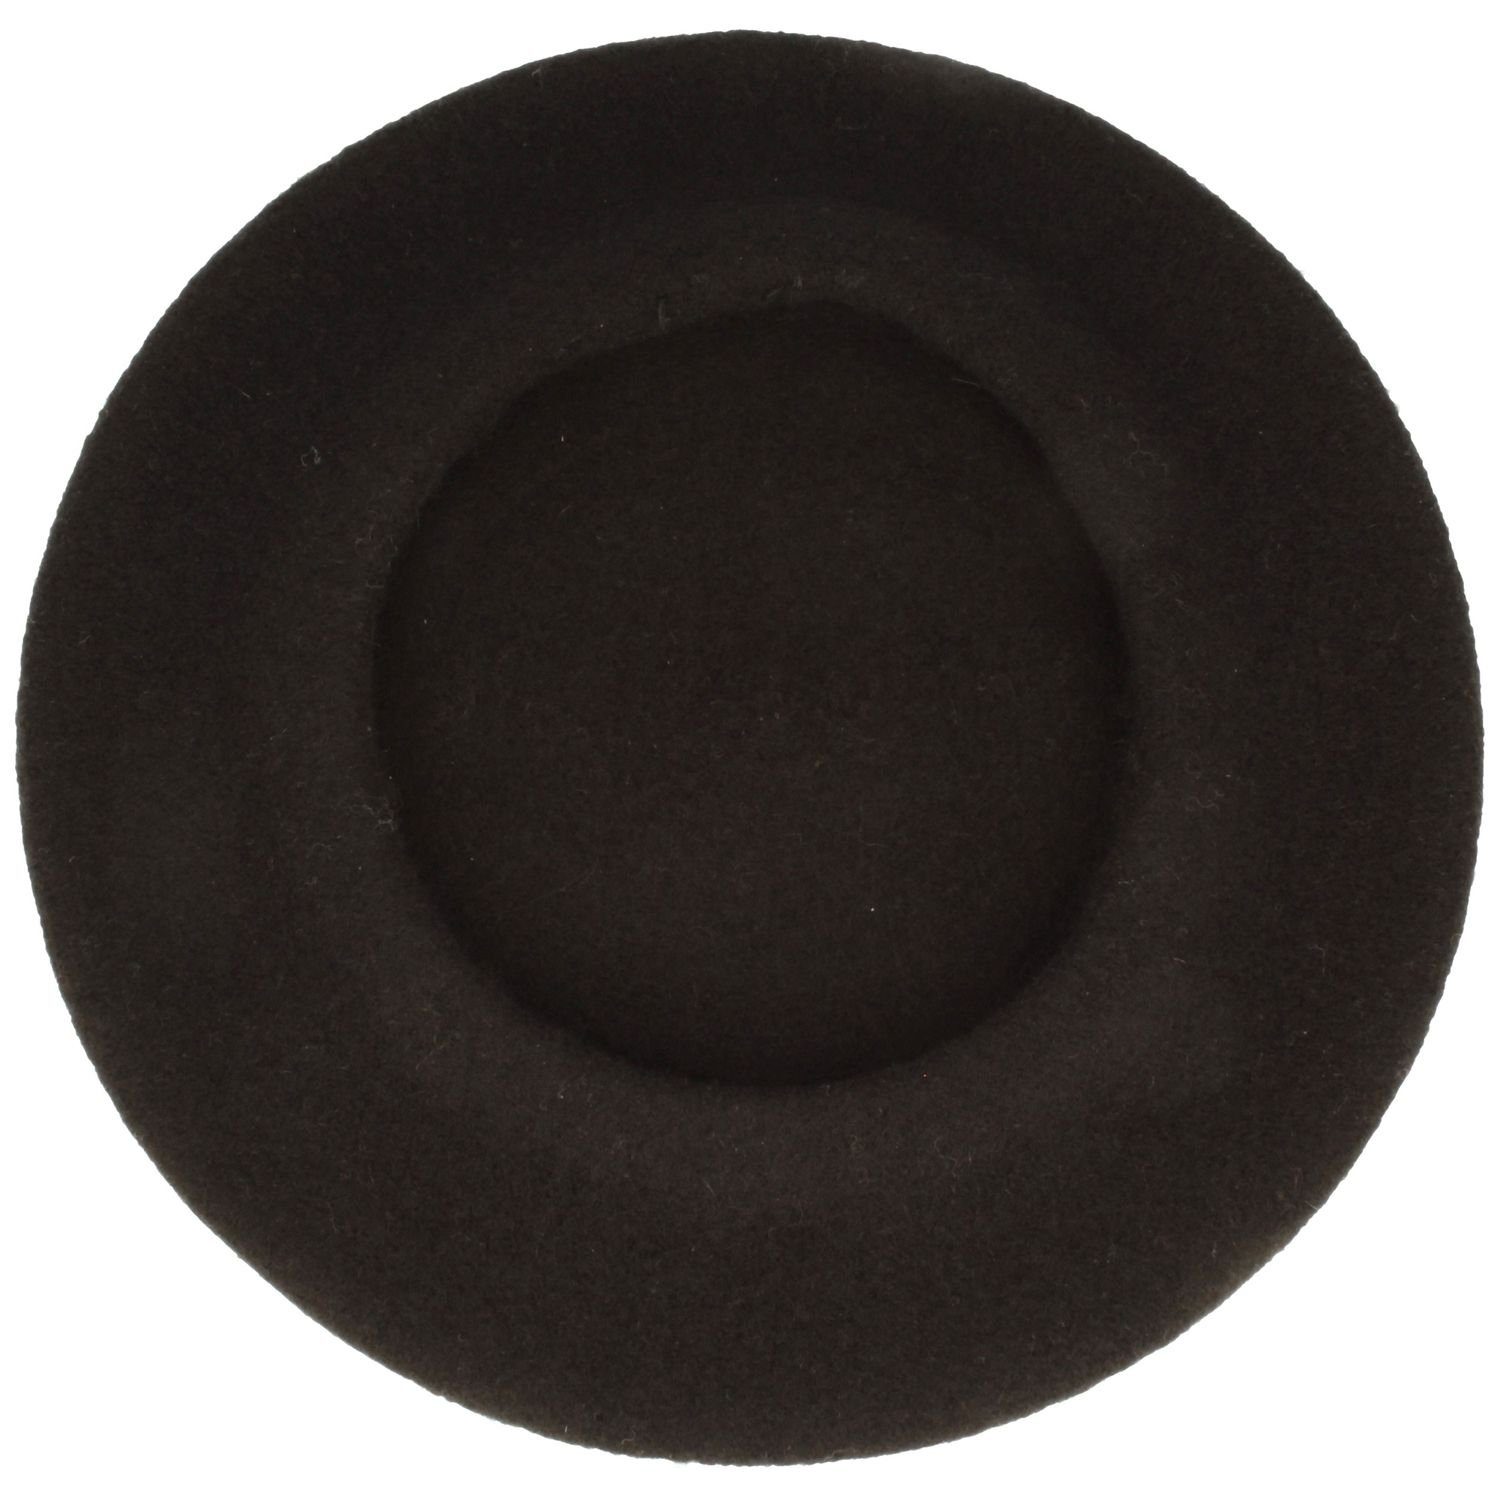 Kopka Baskenmütze schwarz klassisch Schurwolle aus 100%